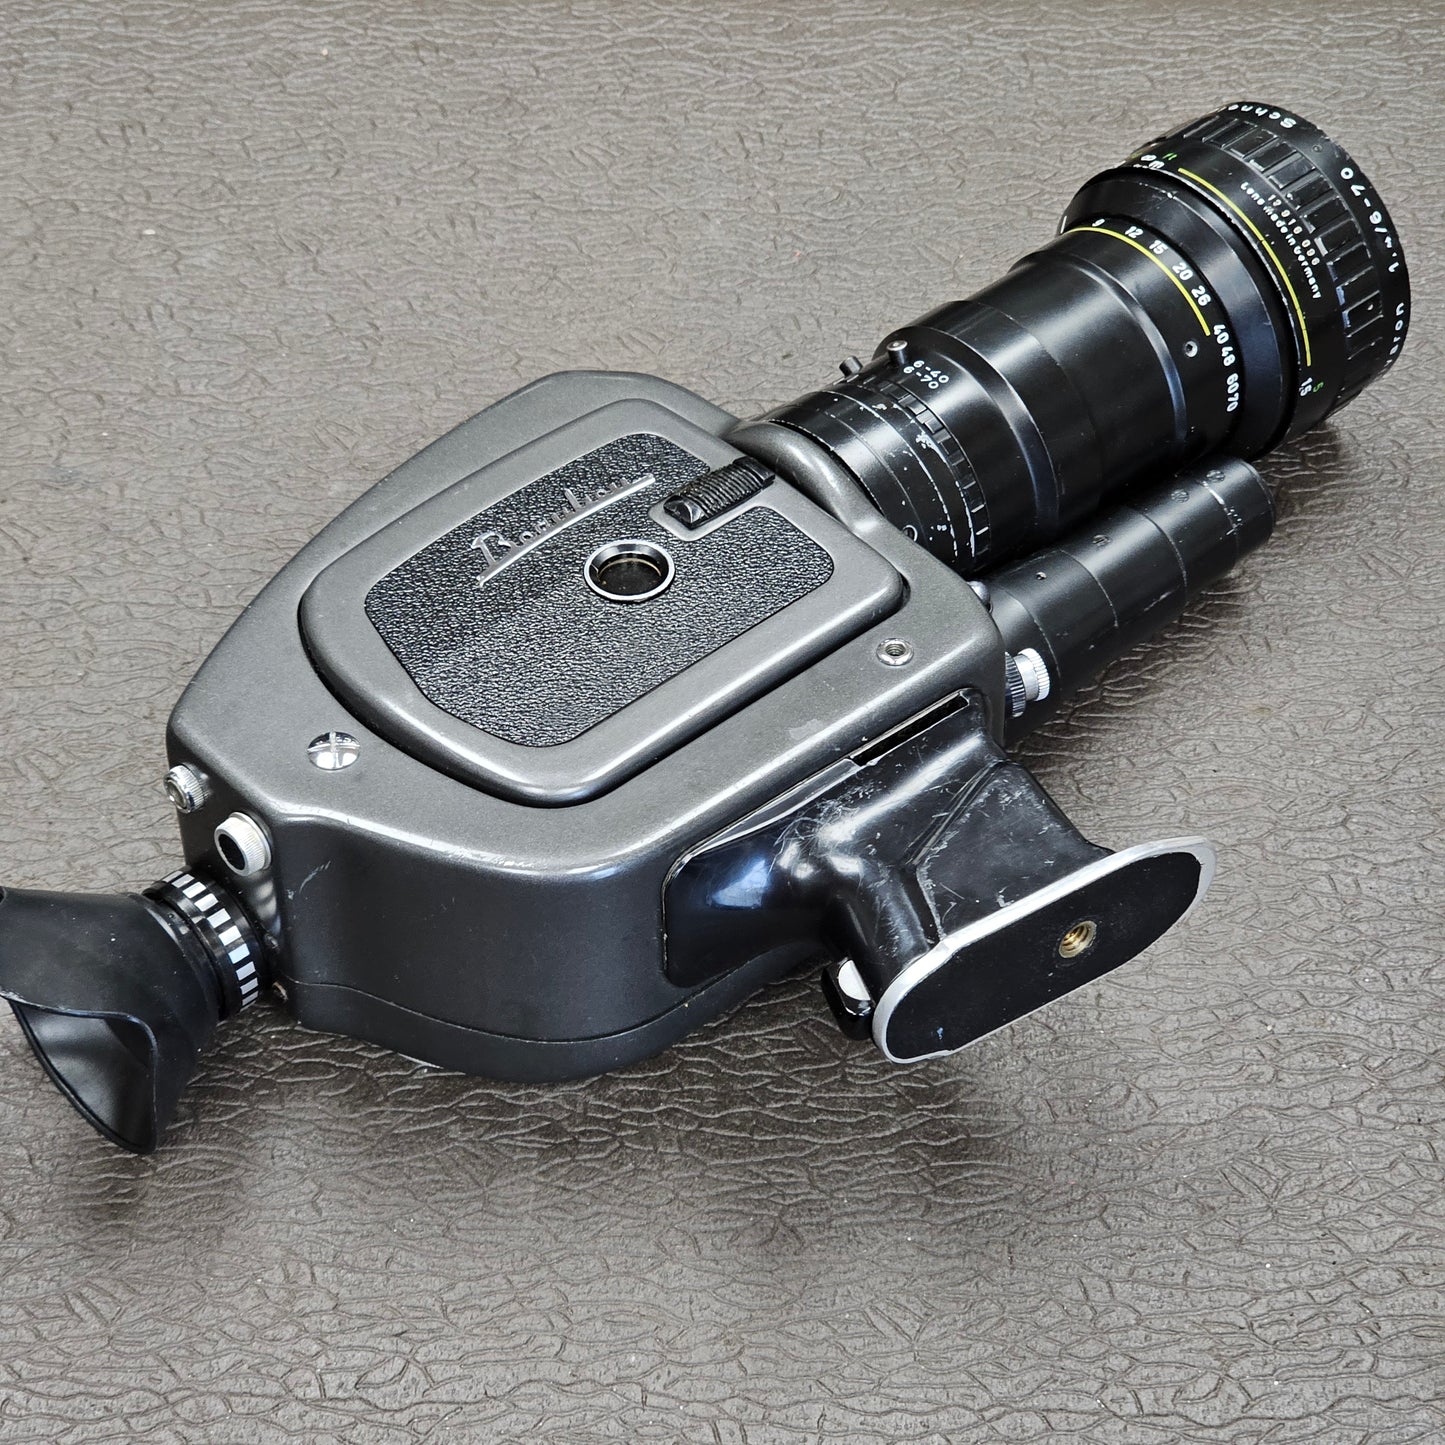 Beaulieu 4008 ZM Super 8mm Camera S# 883204 with Beaulieu-Optivaron Schneider-Kreuznach 6-70mm T1.4 Powered Zoom Lens S# 12916096